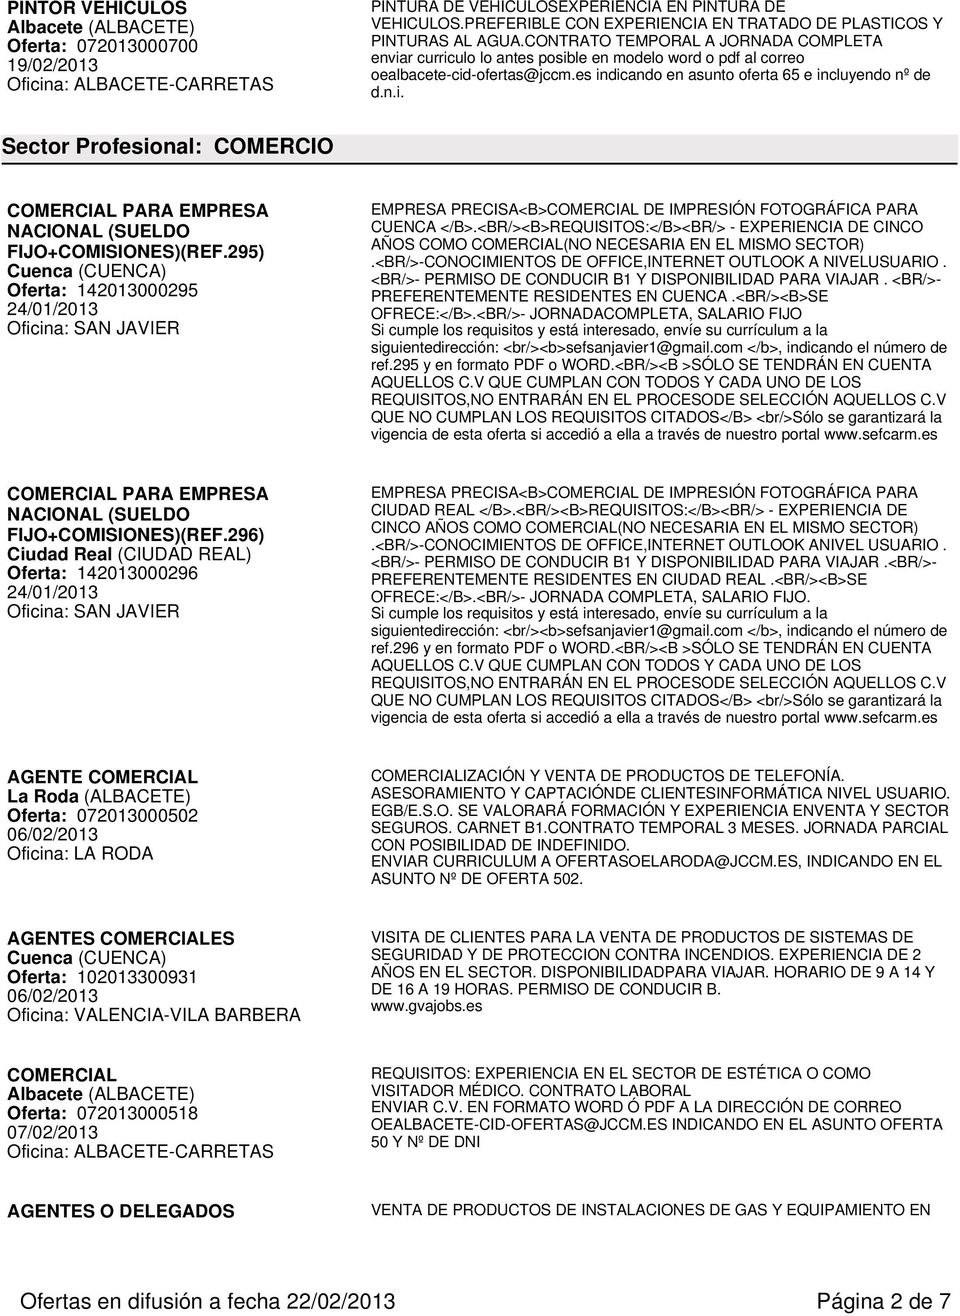 295) Cuenca (CUENCA) Oferta: 142013000295 24/01/2013 Oficina: SAN JAVIER EMPRESA PRECISA<B>COMERCIAL DE IMPRESIÓN FOTOGRÁFICA PARA CUENCA </B>.